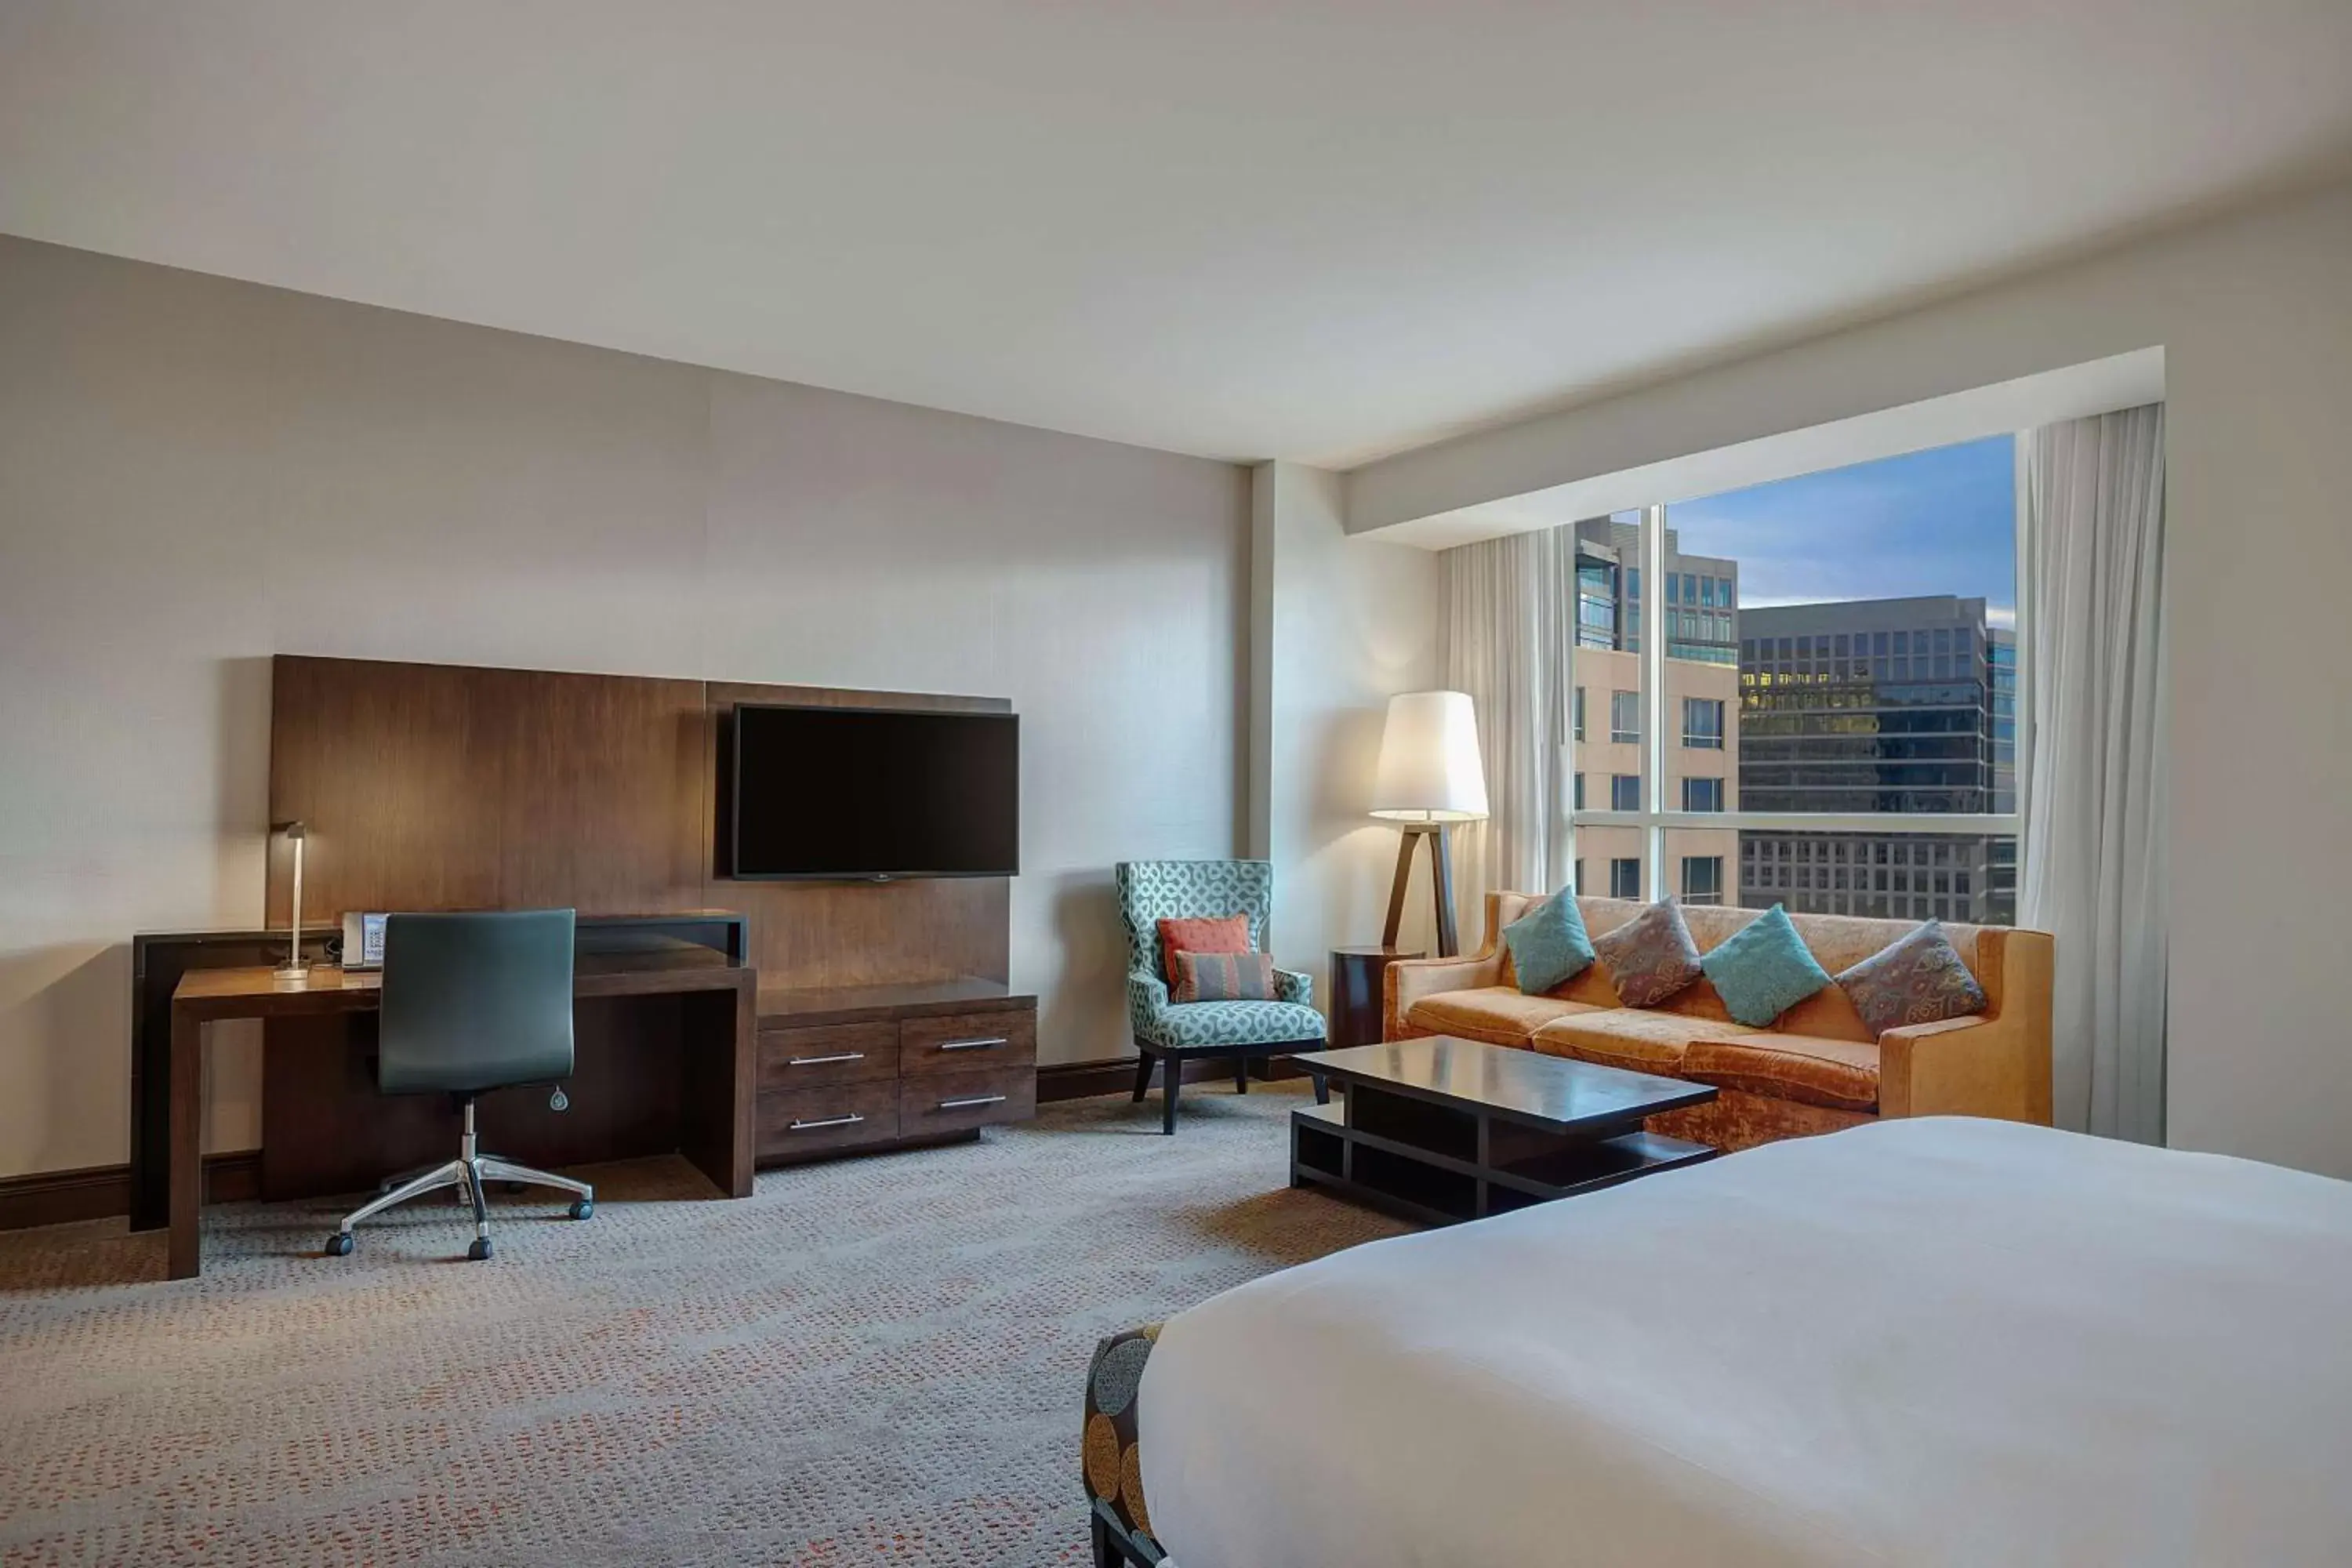 Bedroom, TV/Entertainment Center in Hilton Dallas/Plano Granite Park